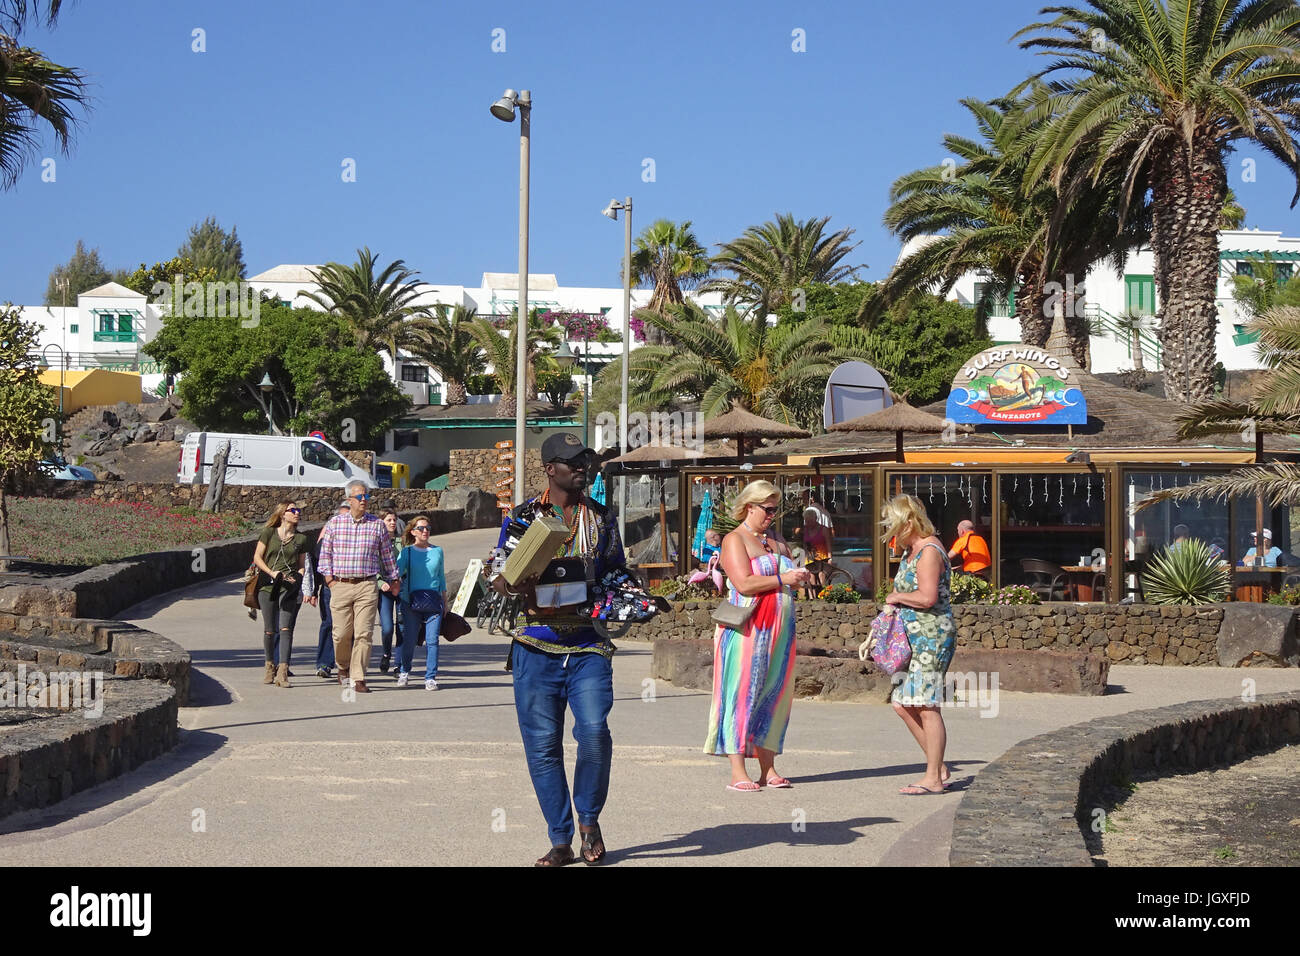 Afrikanischer strassenhaendler verkauft armbanduhren an der promenade beim badestrand playa de Las Cucharas, costa teguise, Lanzarote, kanarische inse Foto Stock